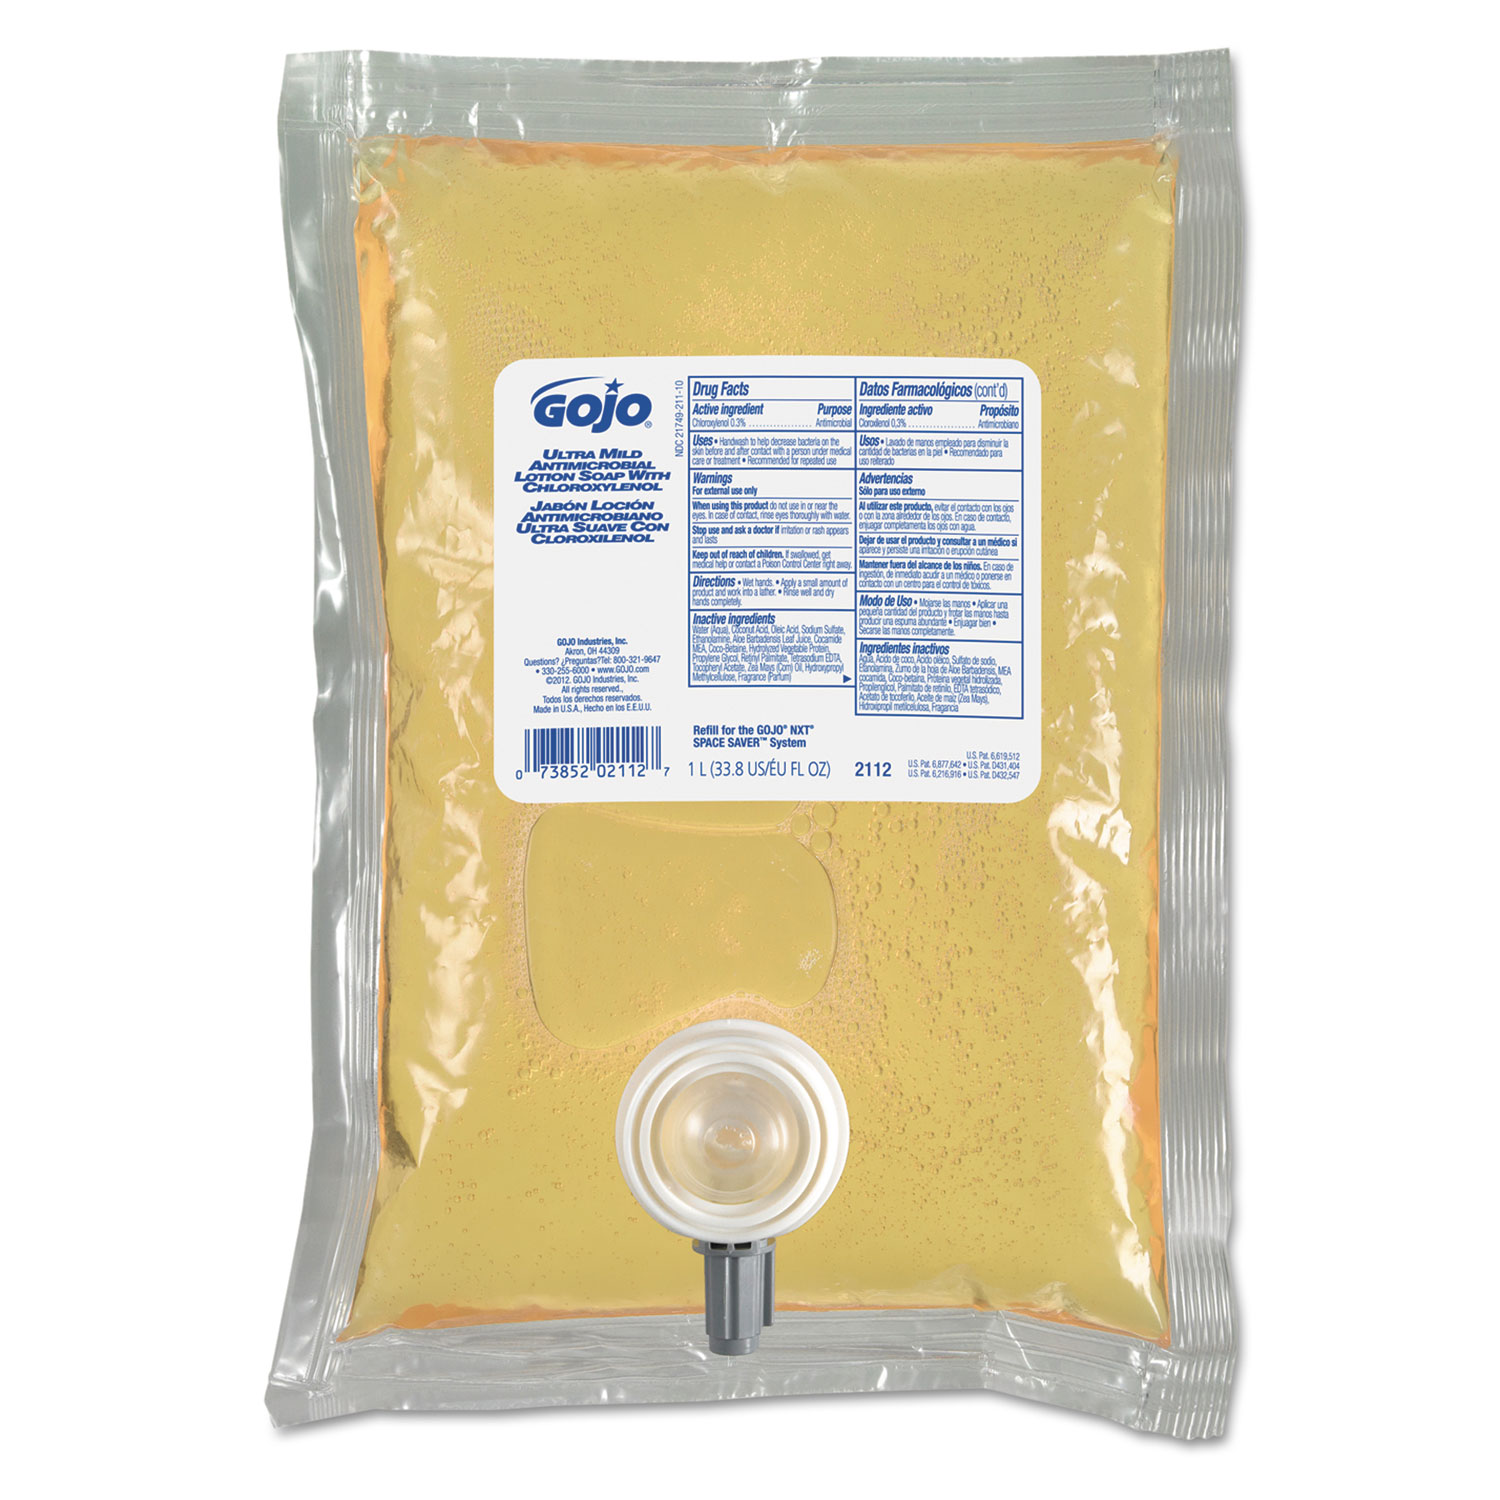  GOJO 2112-08 Antimicrobial Soap w/Chloroxylenol, Floral Balsam, 1000mL Refill, 8/Carton (GOJ2112) 